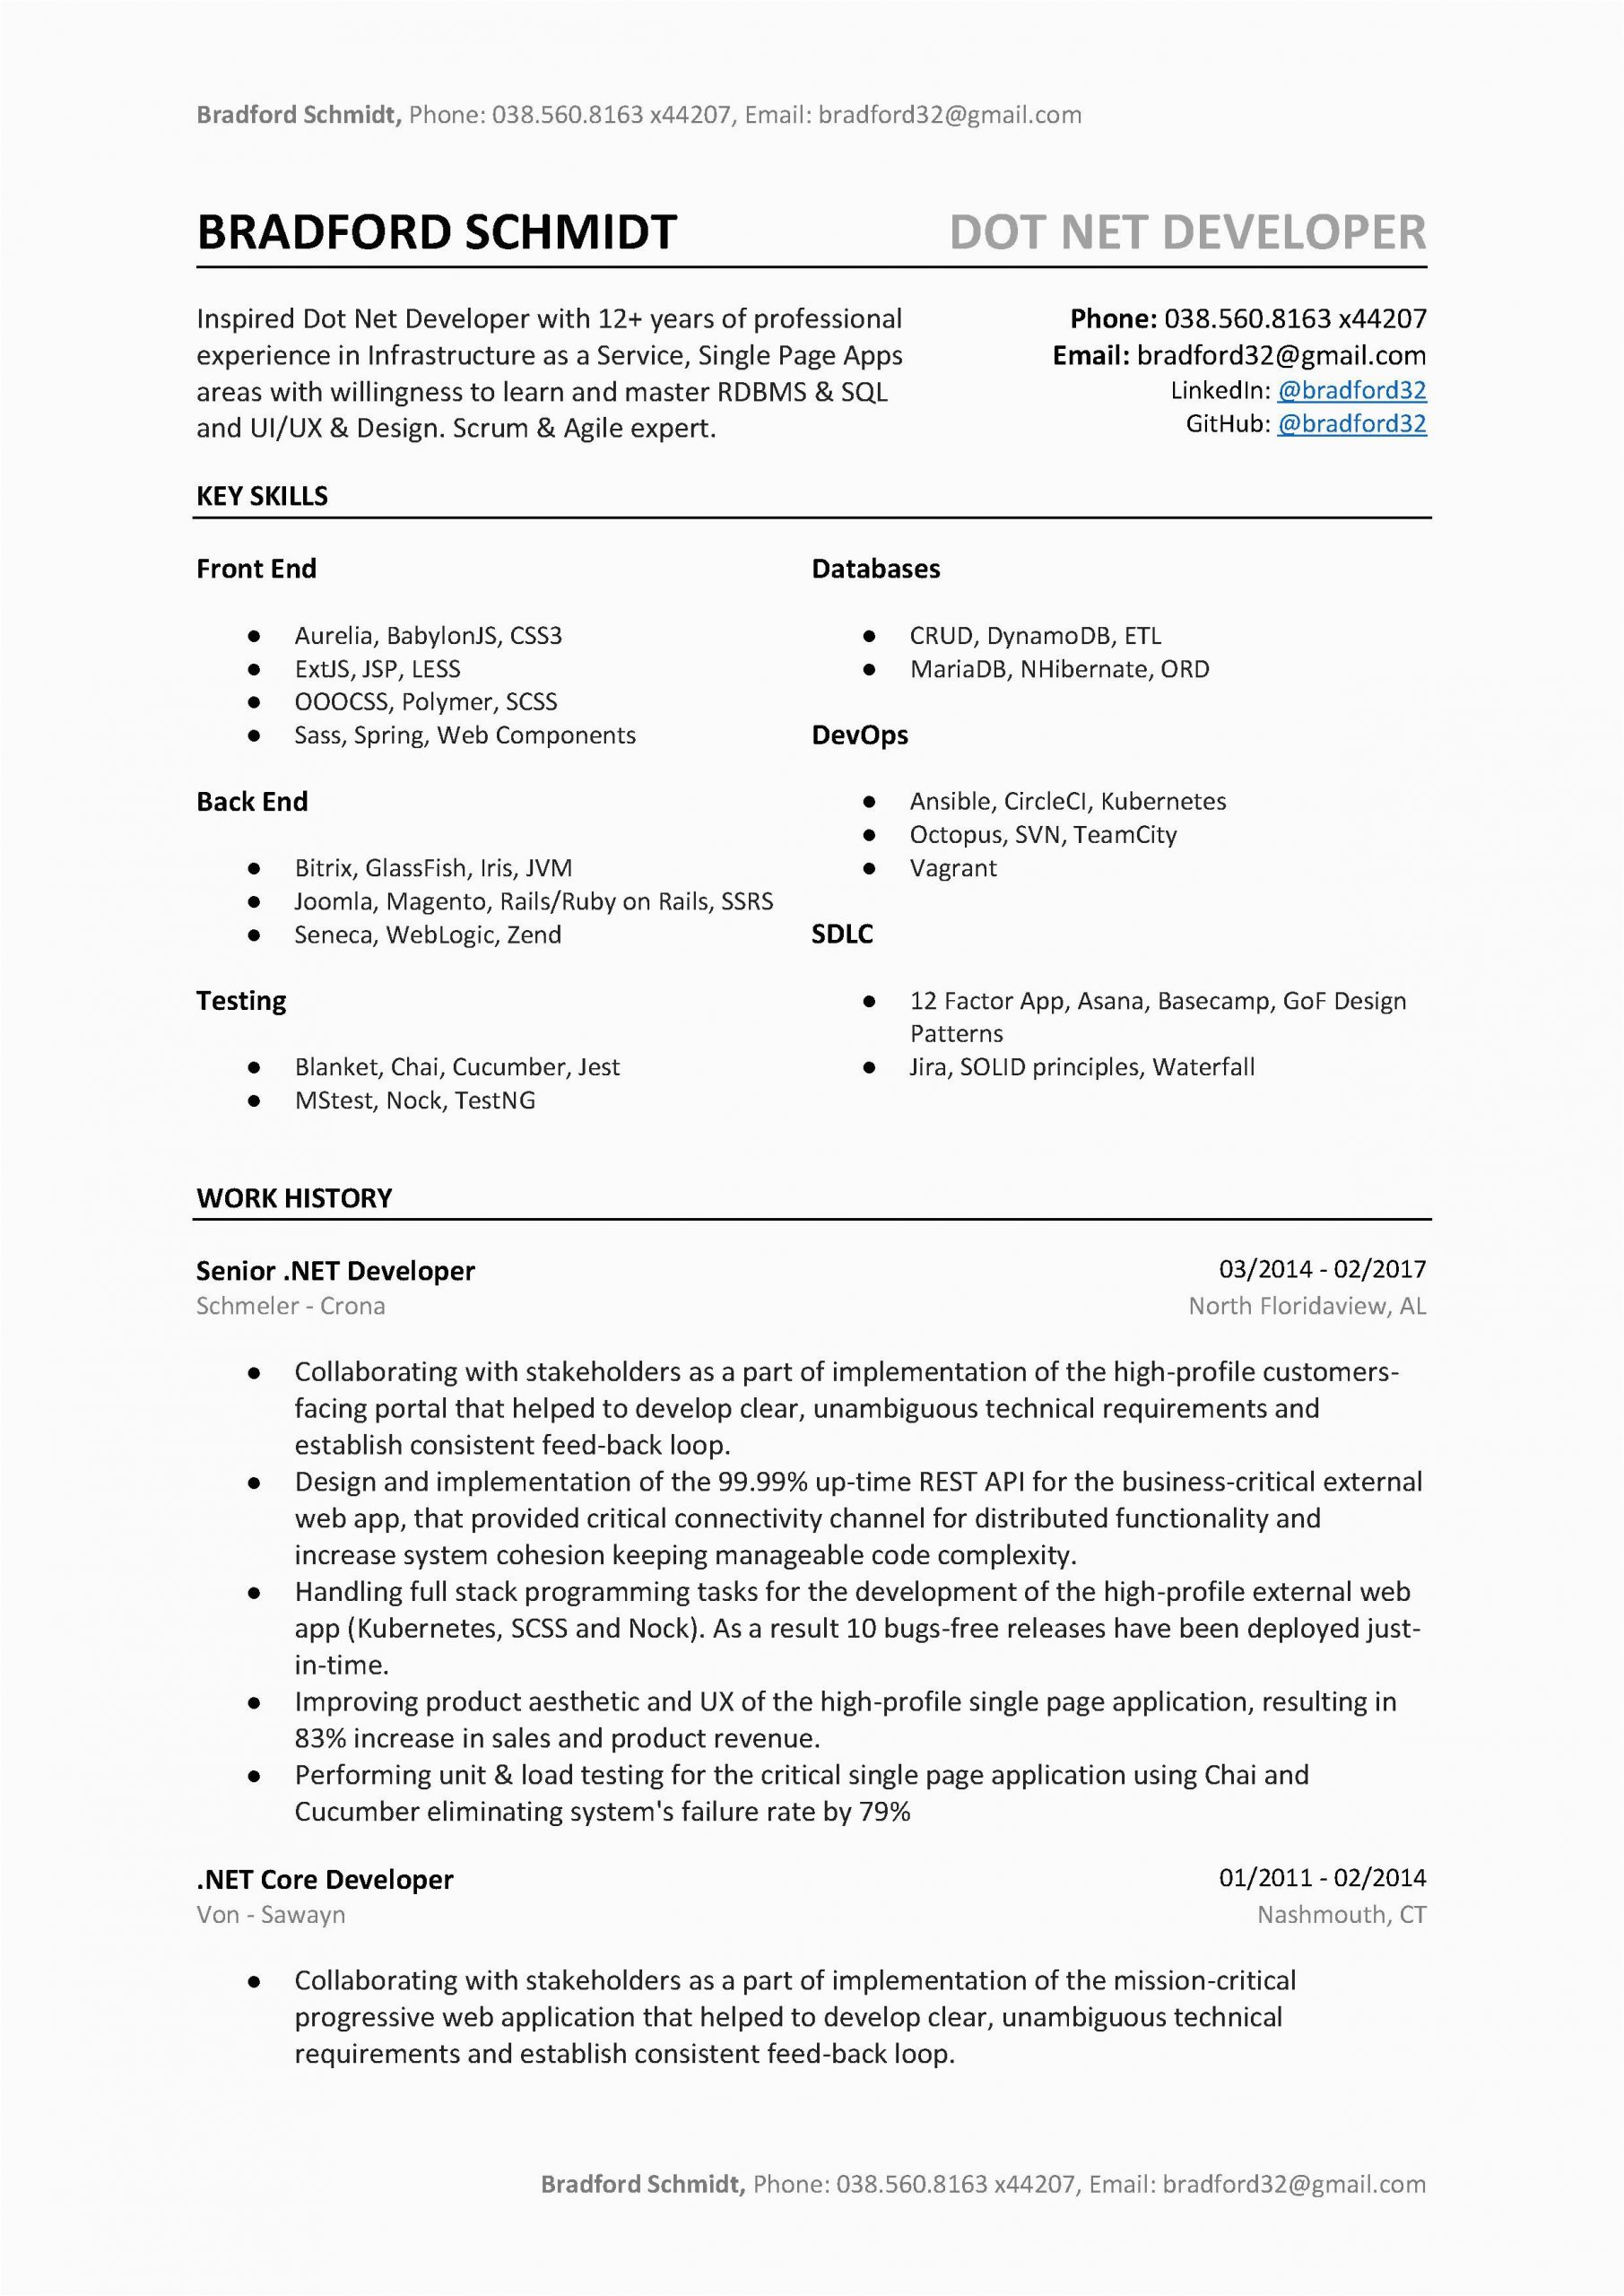 Sample Resume for Dot Net Developer Experience 3 Years Dot Net Developer Resume Sample & Template to Download